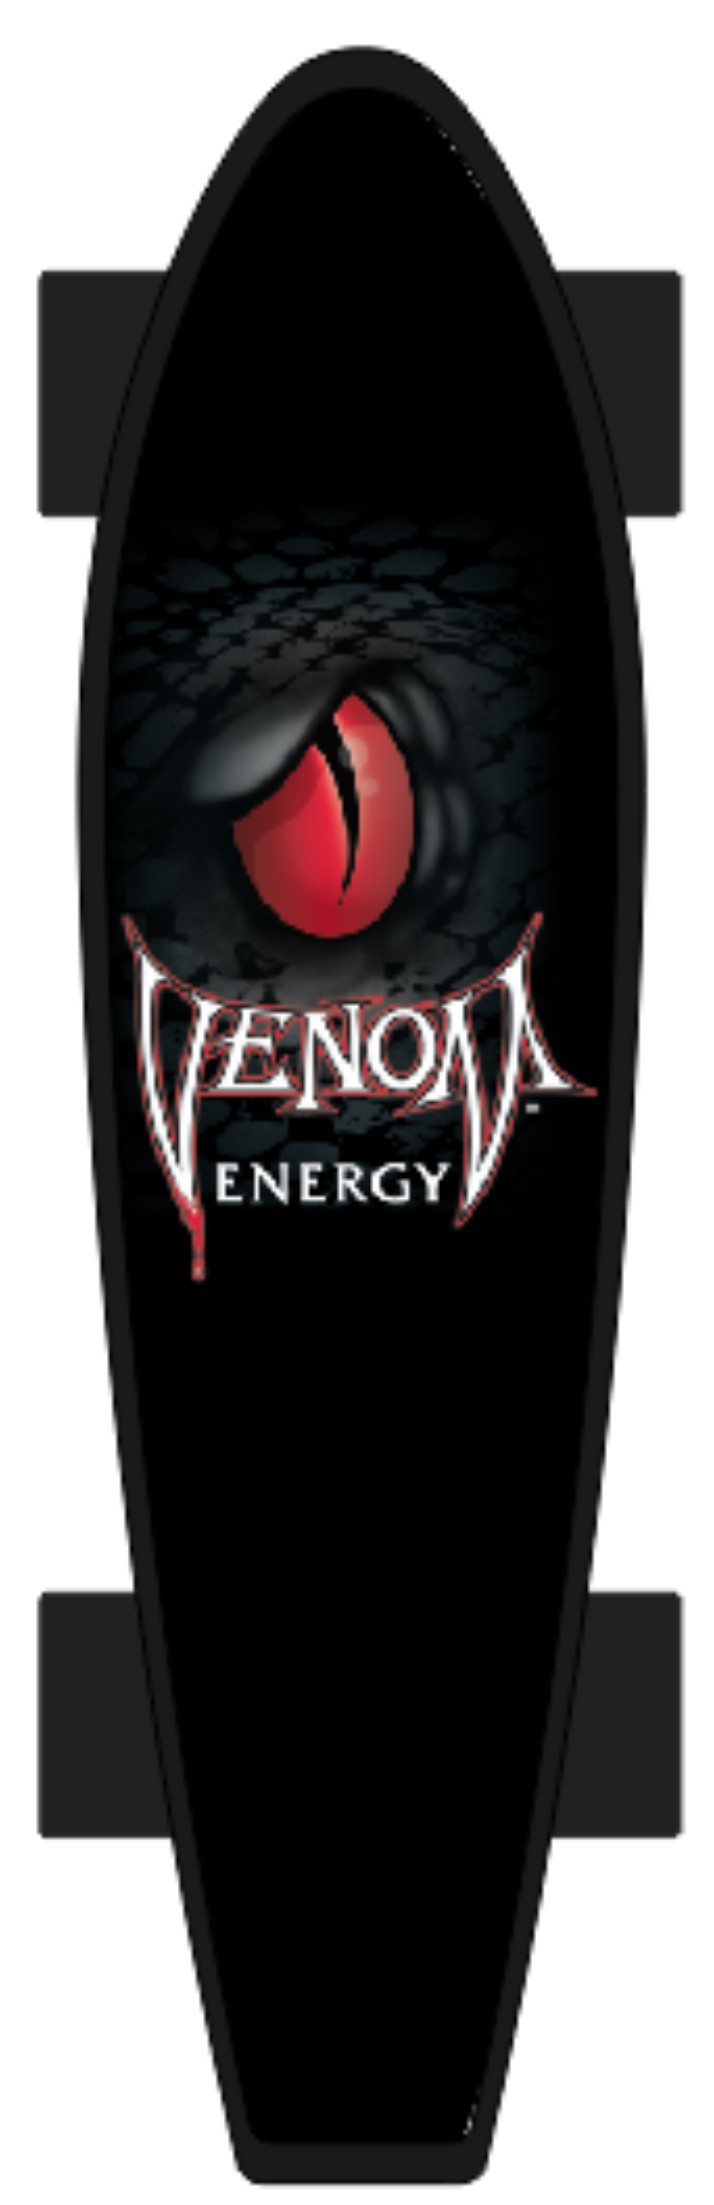 Venom Mini Retro Skateboard.jpg